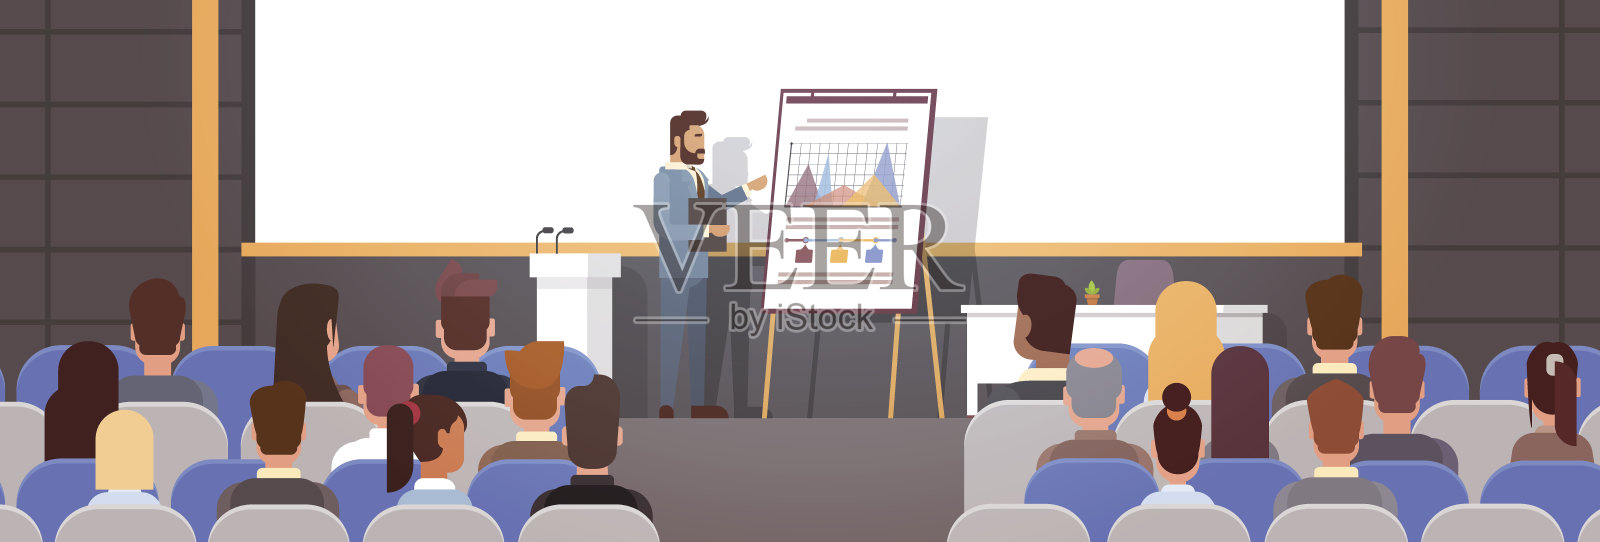 商务人士小组会议会议培训课程与图表挂图插画图片素材